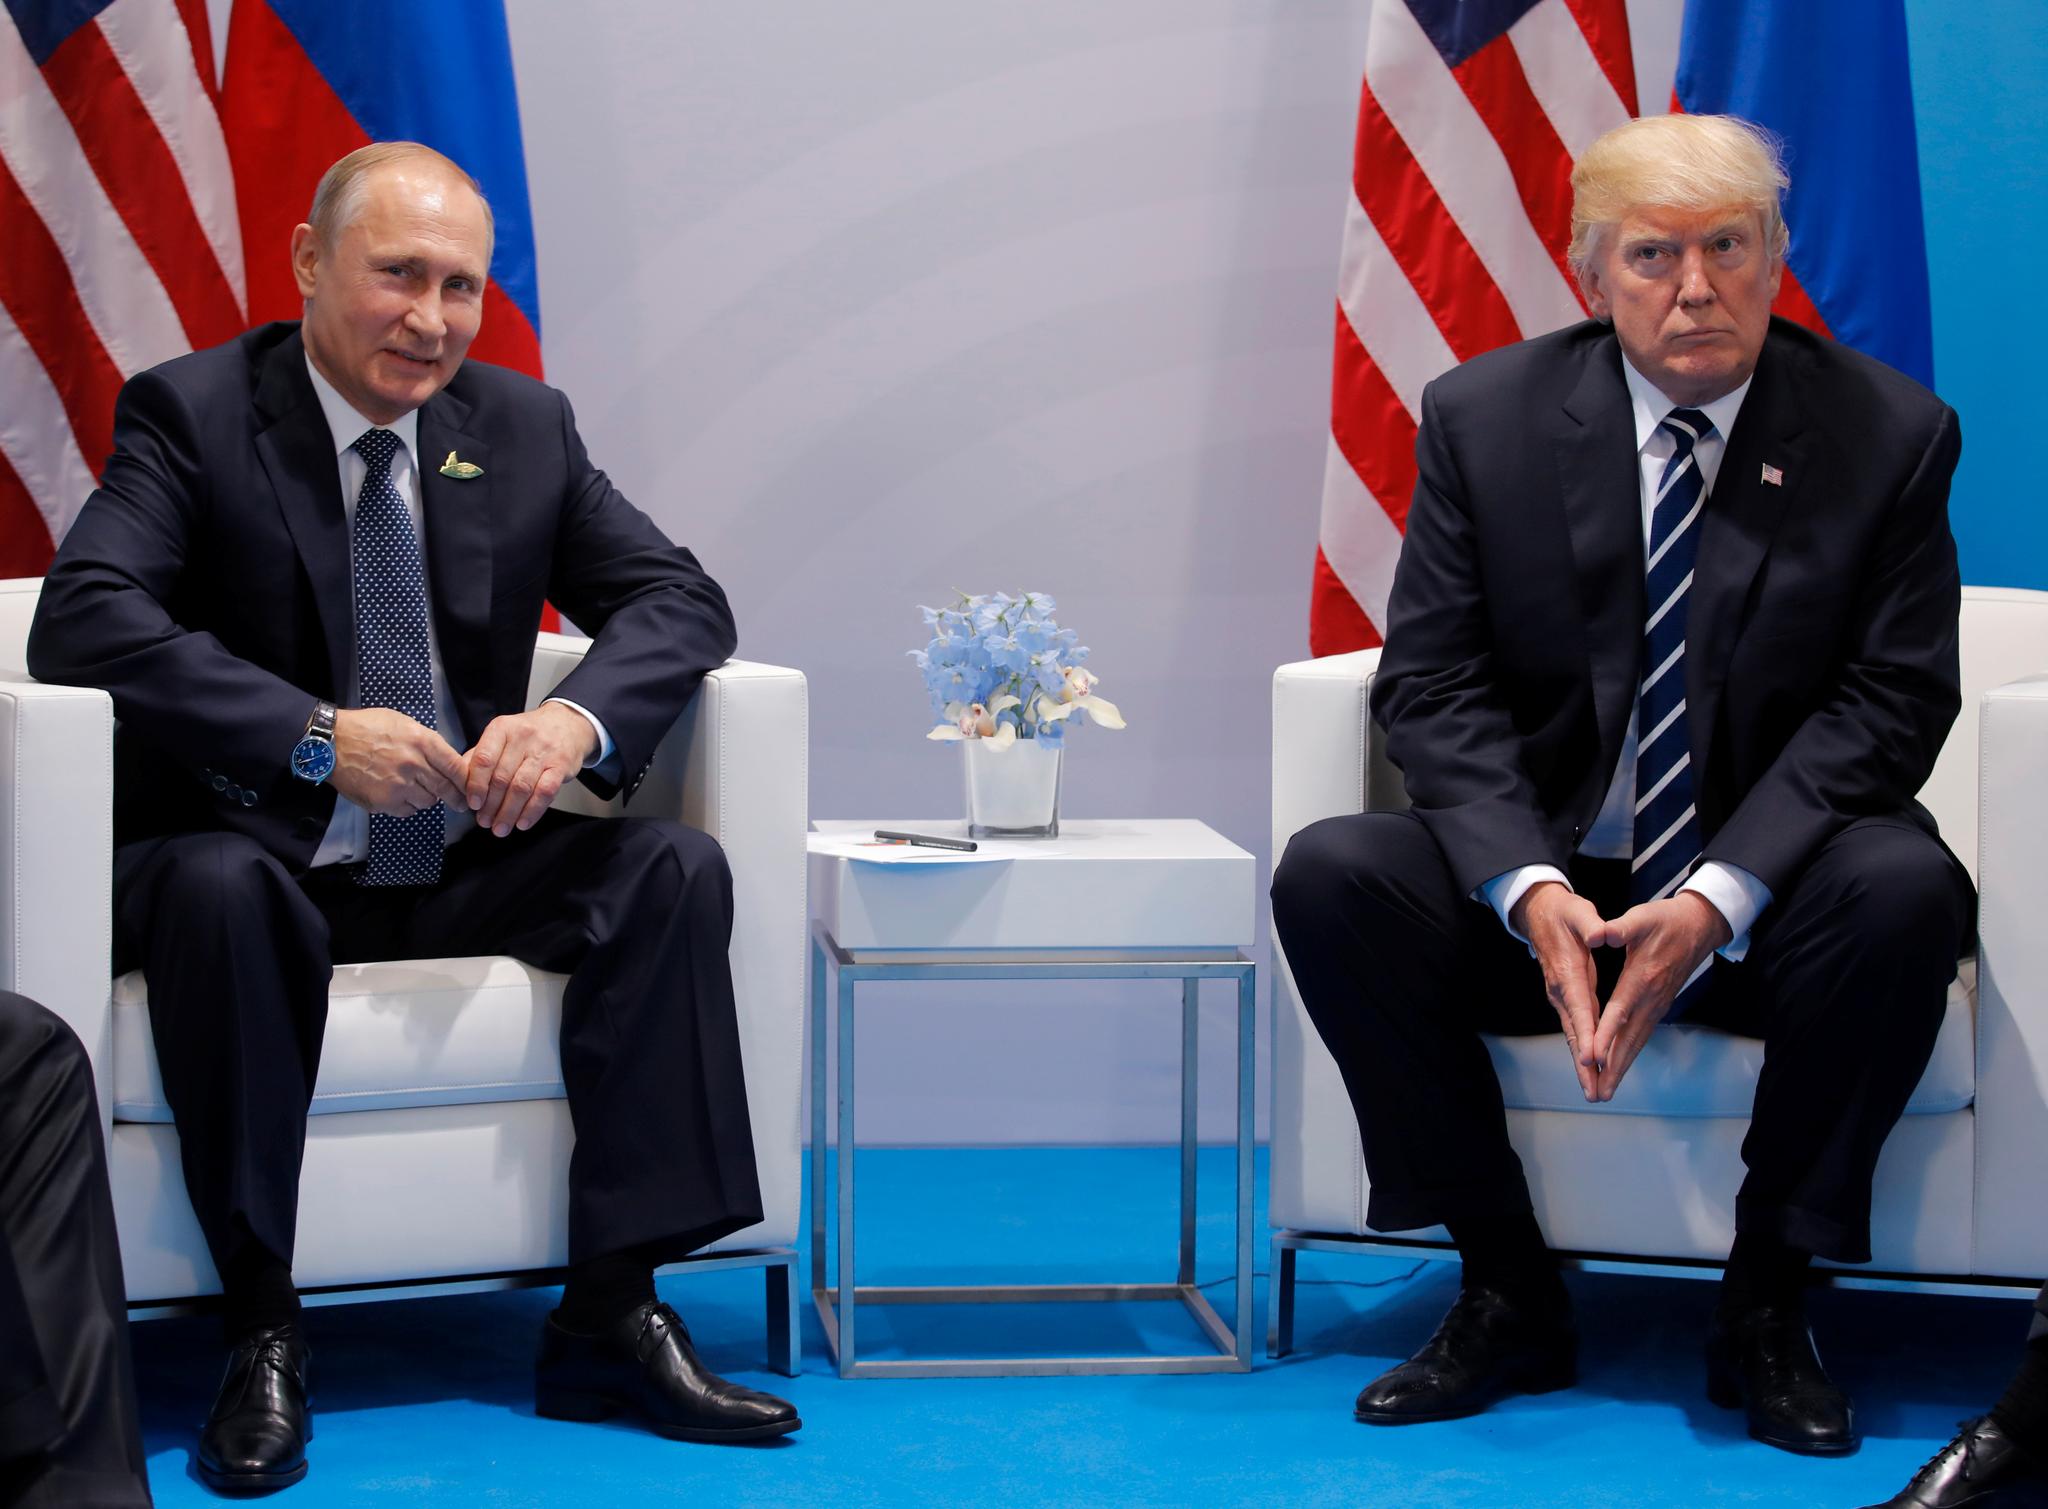  Donald Trump har hele tiden benektet at kampanjen hans samarbeidet med russerne i valgkampen. Det blir vanskeligere å komme med denne påstanden nå, skriver Kristoffer Rønneberg. Her er Trump fotografert sammen med Russlands president under G20-toppmøtet 7. juli.